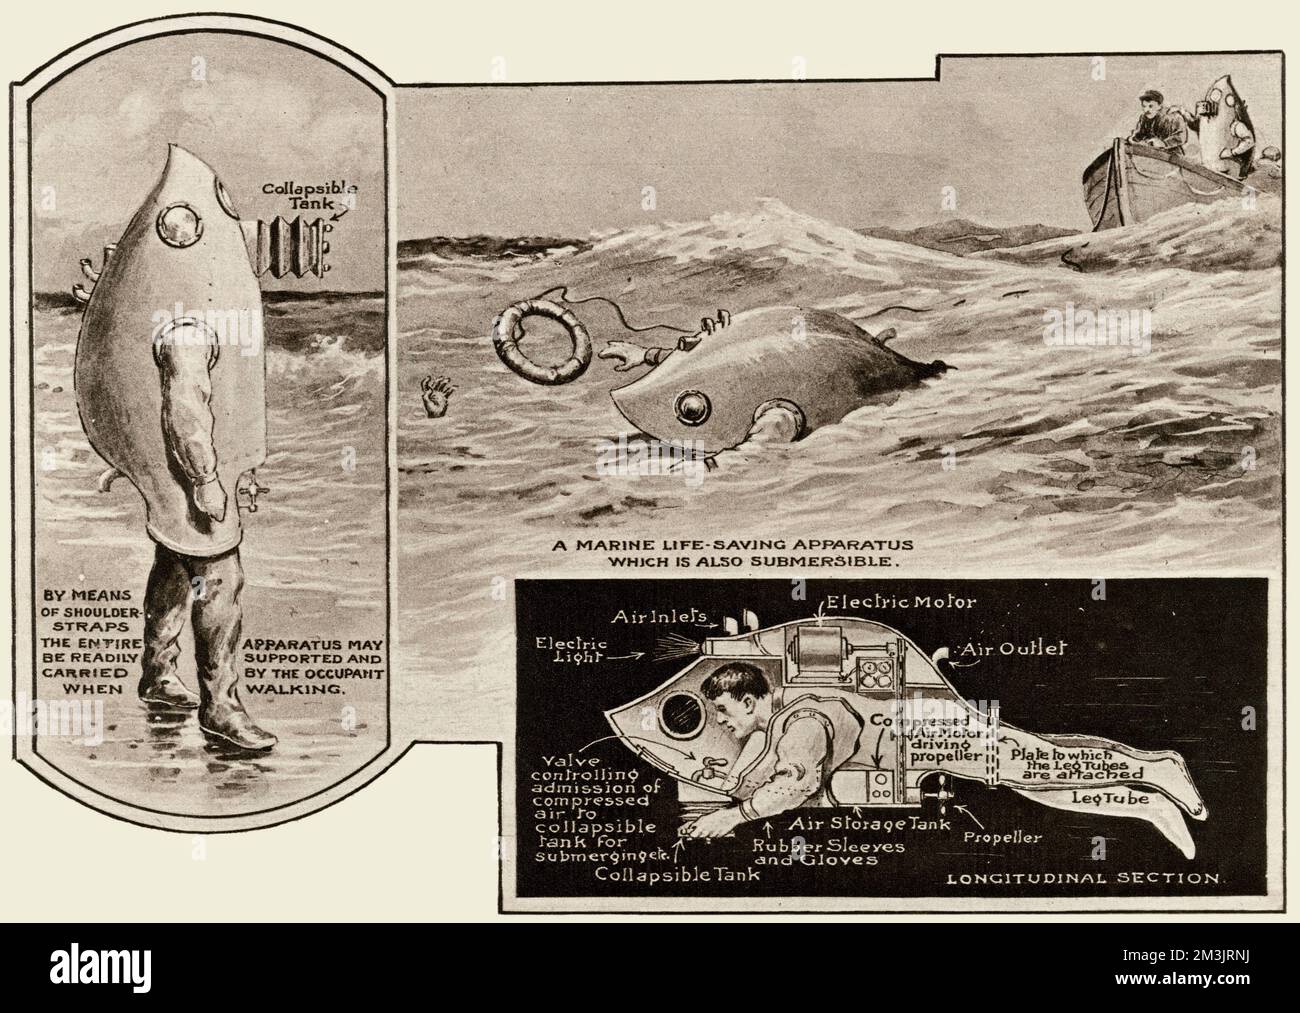 Abbildung eines Beispiels eines neugierigen Designs, das dem Patentamt im Jahr 1920 zugesandt wurde, eines Meerestiergeräts, das ebenfalls tauchfähig war. Die Skizzen zeigen 3 Bilder des Geräts, den Bewohner an Land, die Rettung einer Person im Meer und einen detaillierten Querschnitt der Ausrüstung. Datum: 1920 Stockfoto